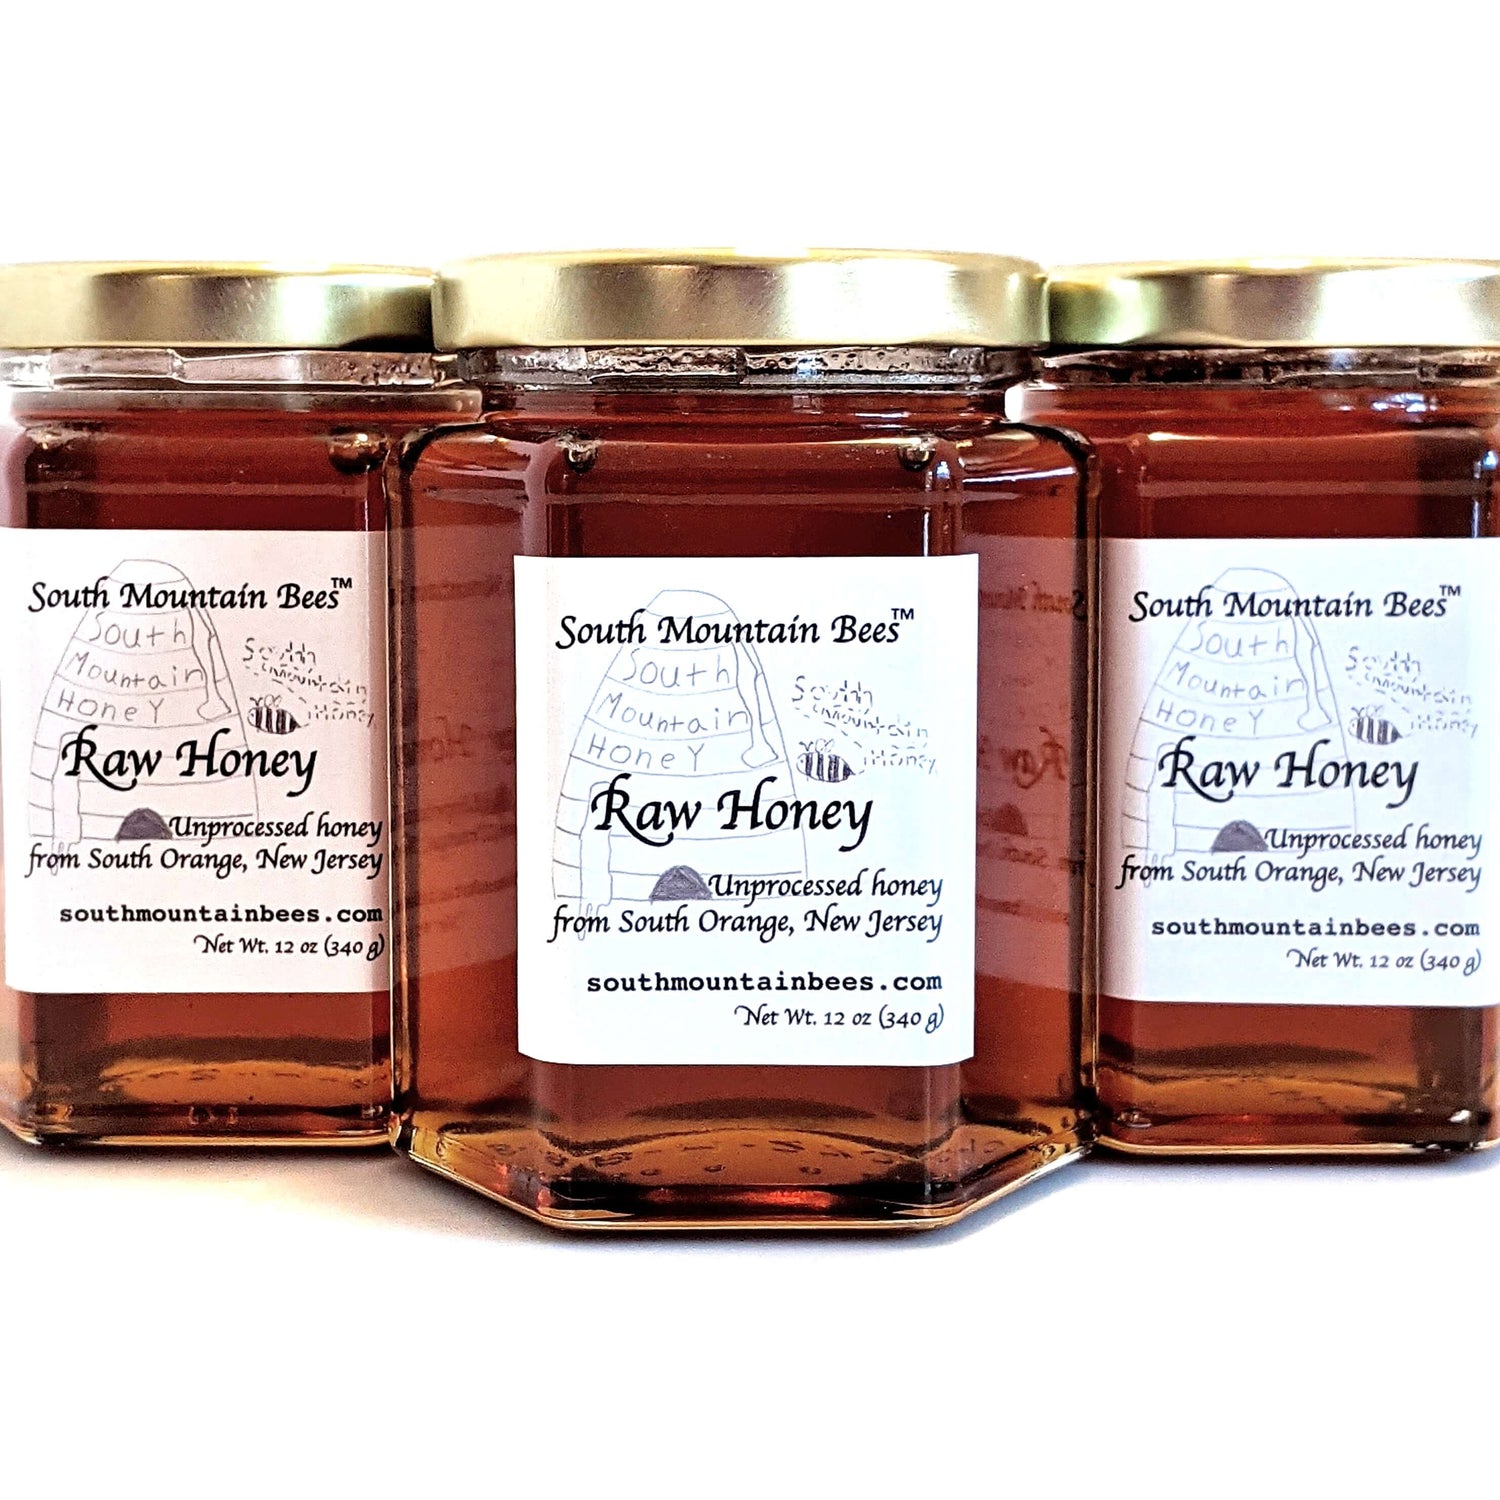 Shiny dark honey in finest hexagonal glass jars with golden lids.